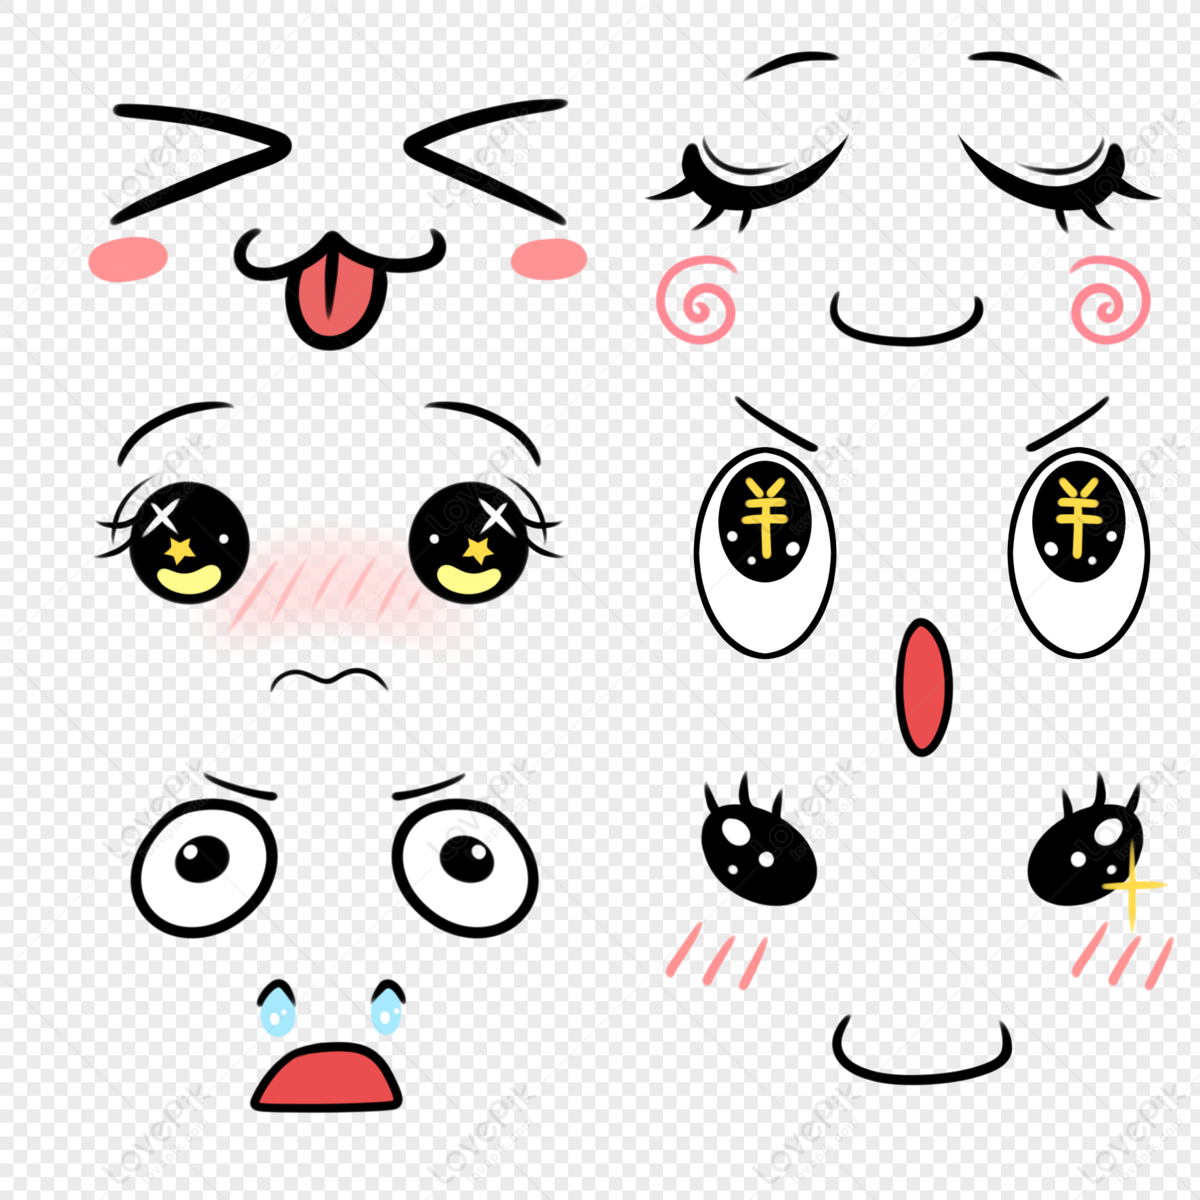 Kawaii rostos bonitos. olhos e bocas no estilo mangá. emoticon